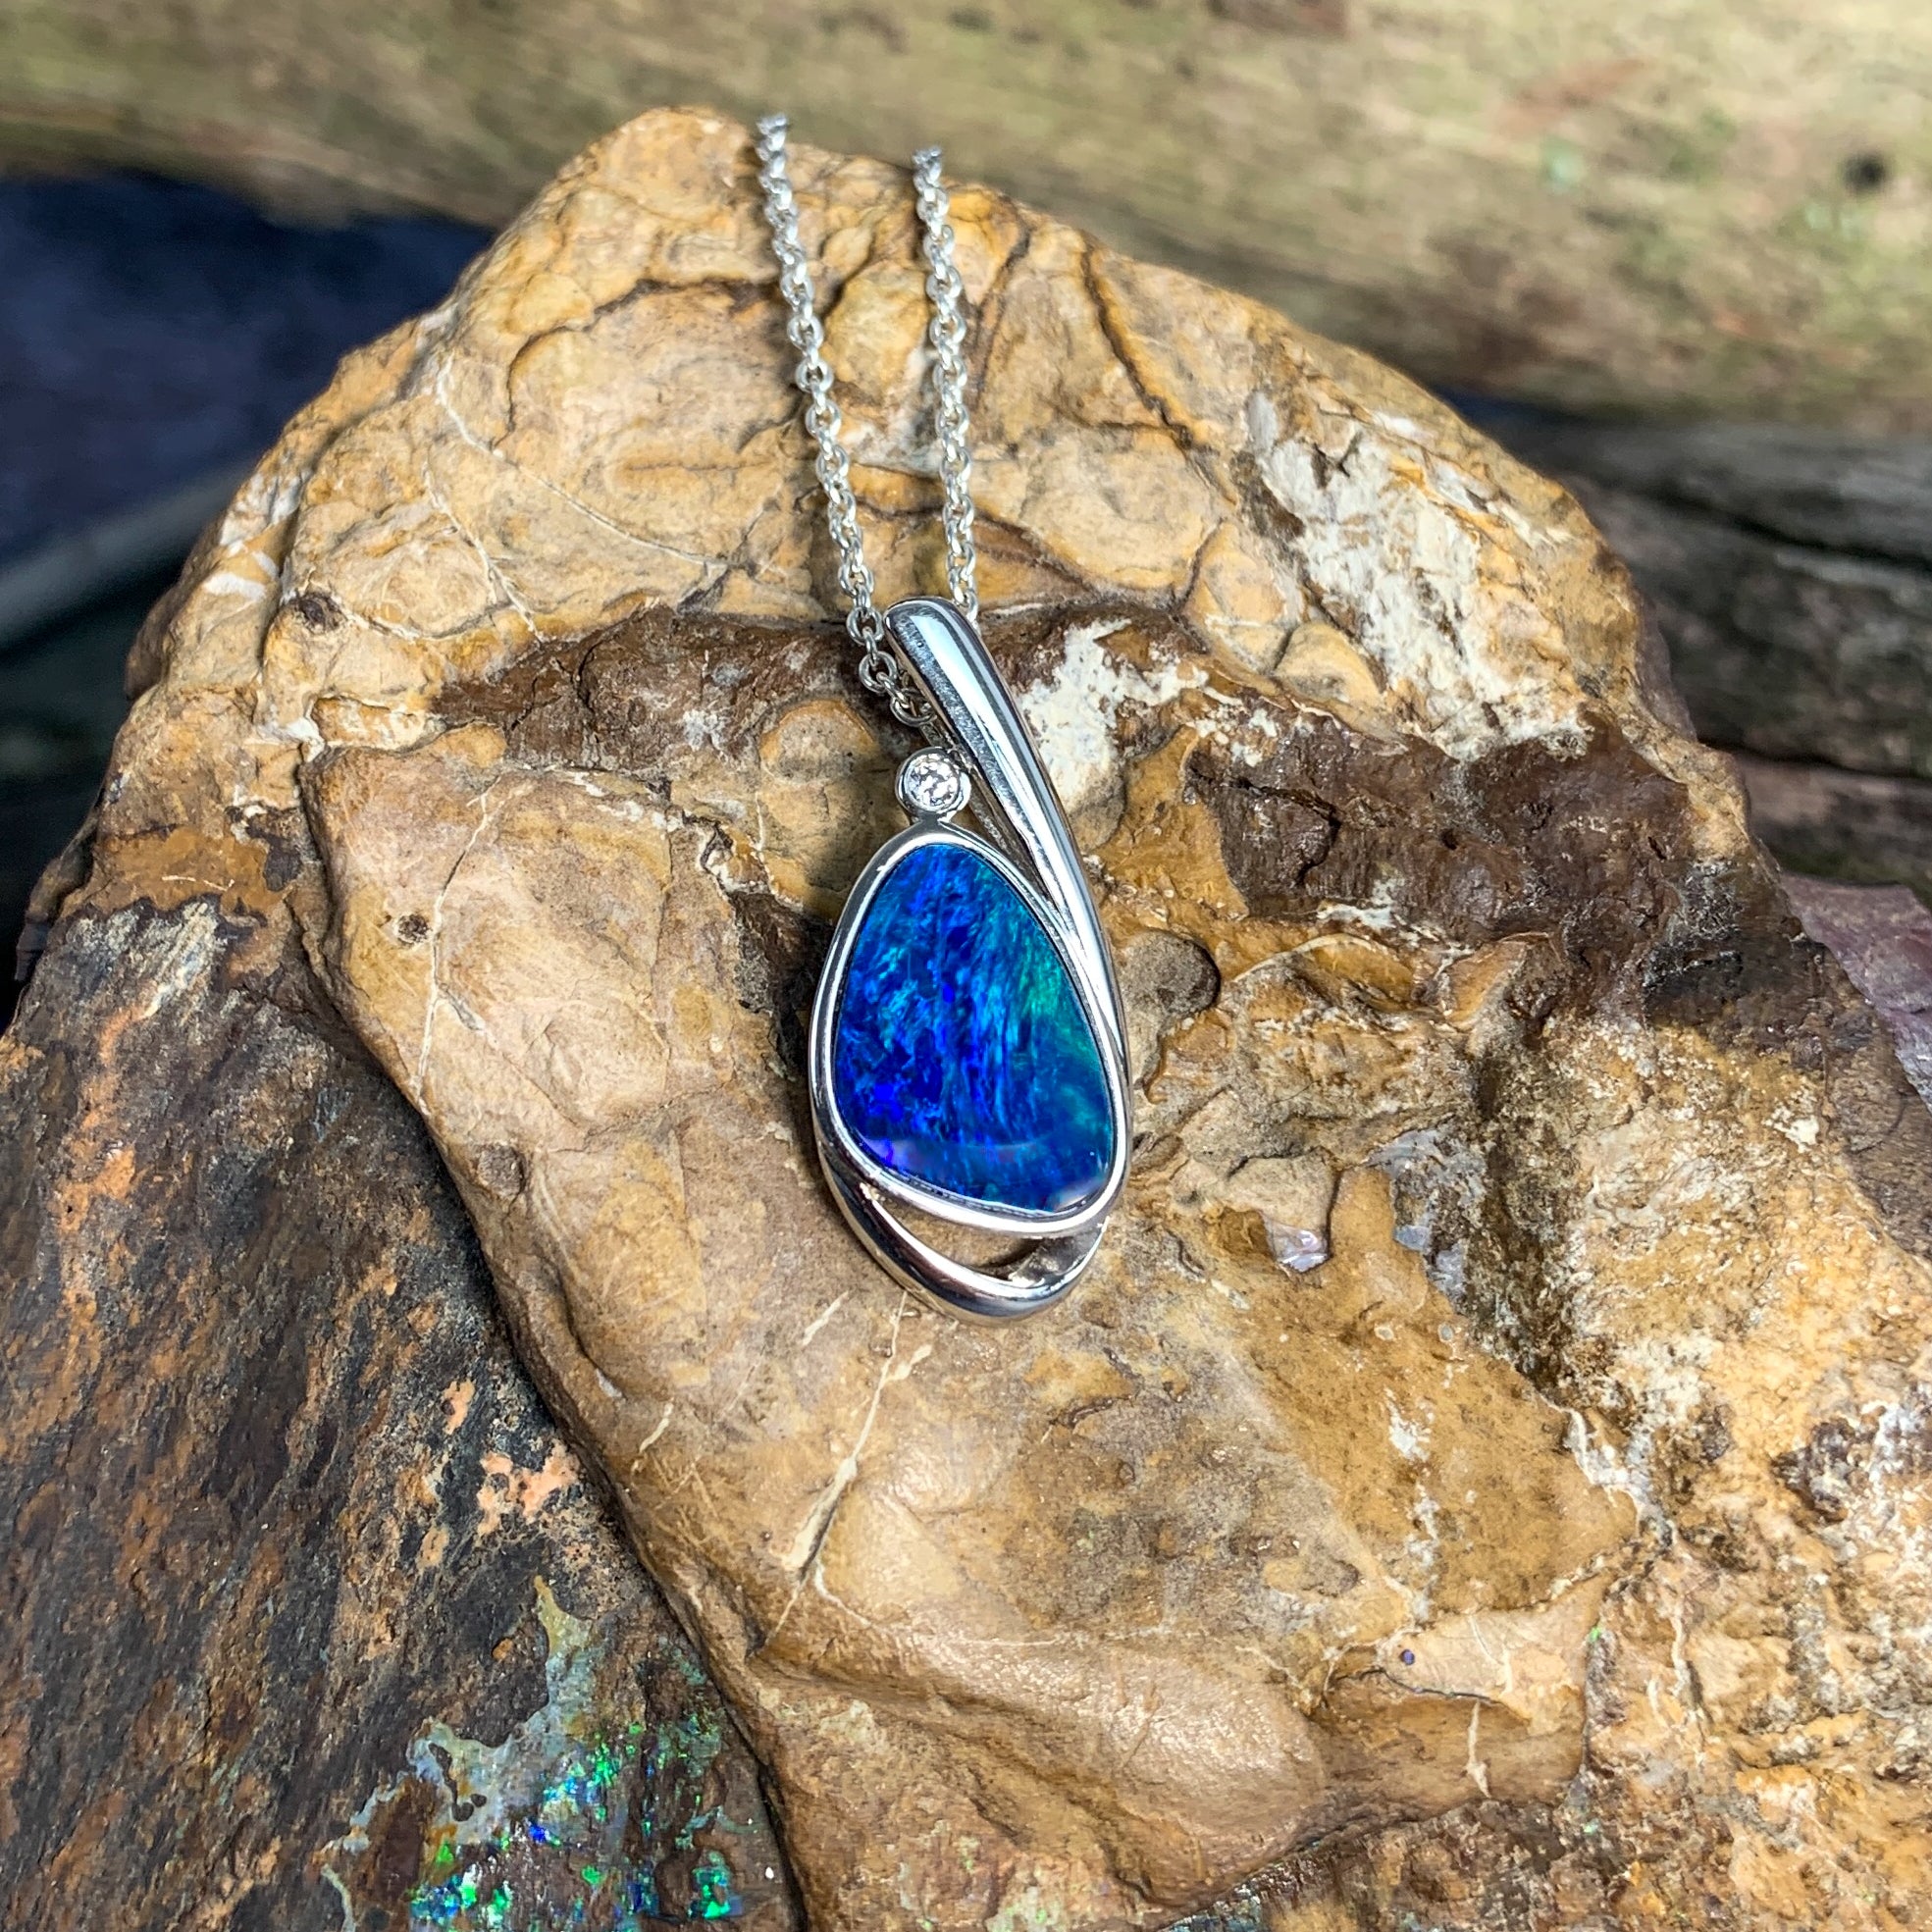 Sterling Silver Opal doublet 23.9x10.7mm pendant - Masterpiece Jewellery Opal & Gems Sydney Australia | Online Shop